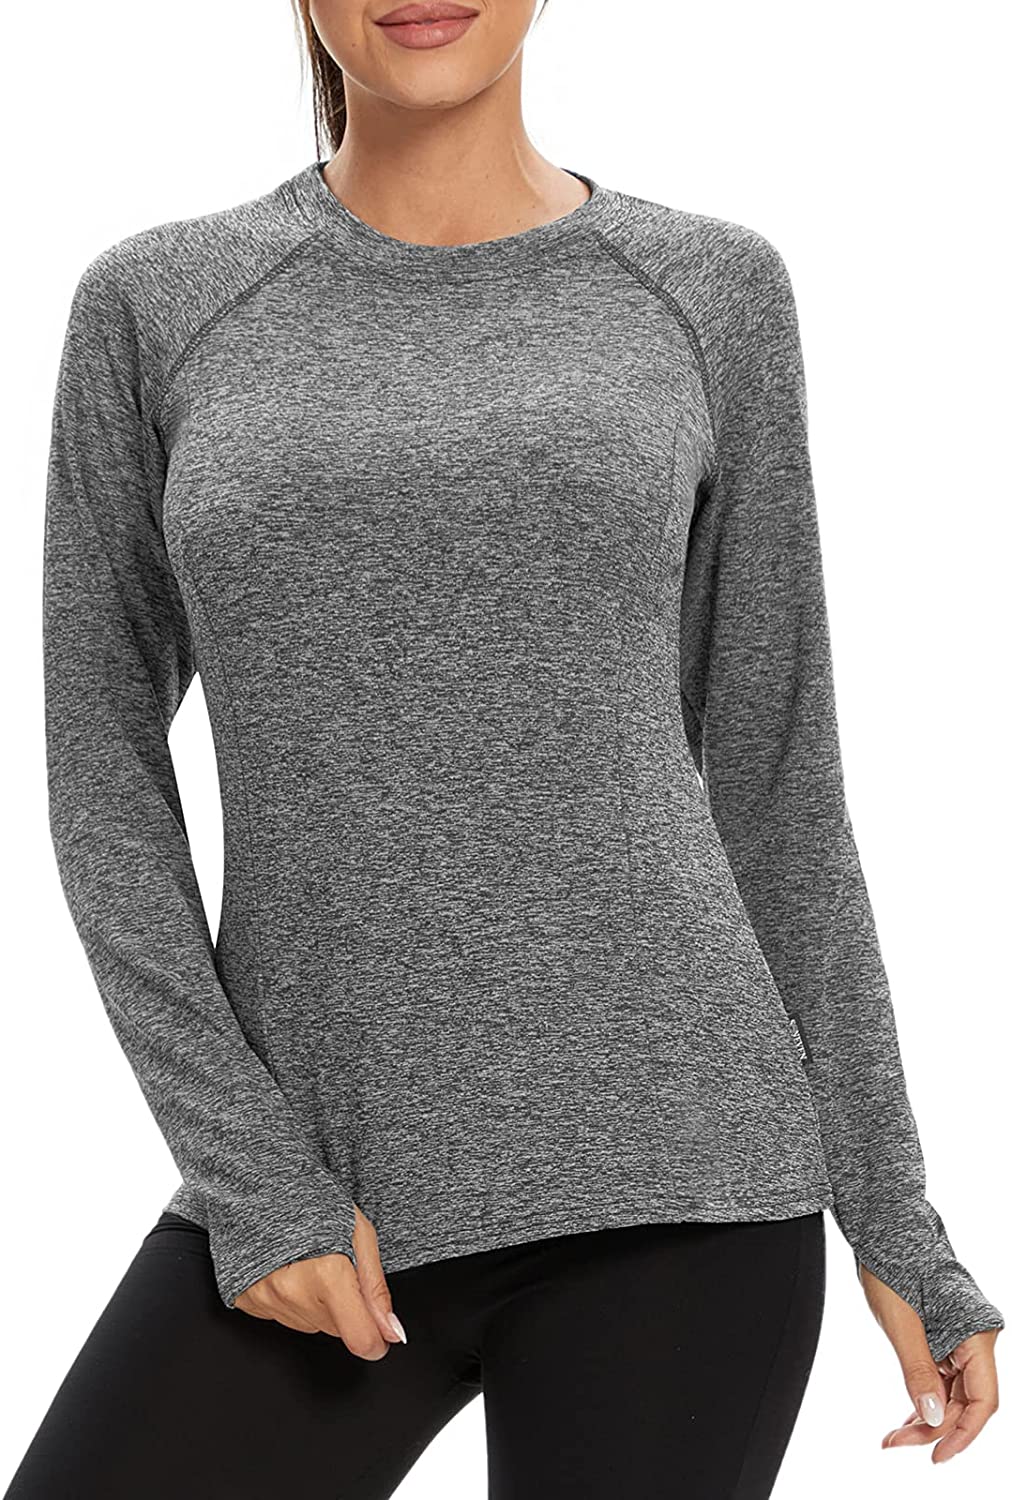 thumbnail 16  - Soneven Women Fleece Thermal Long Sleeve Running Shirt Workout Tops Moisture Wic